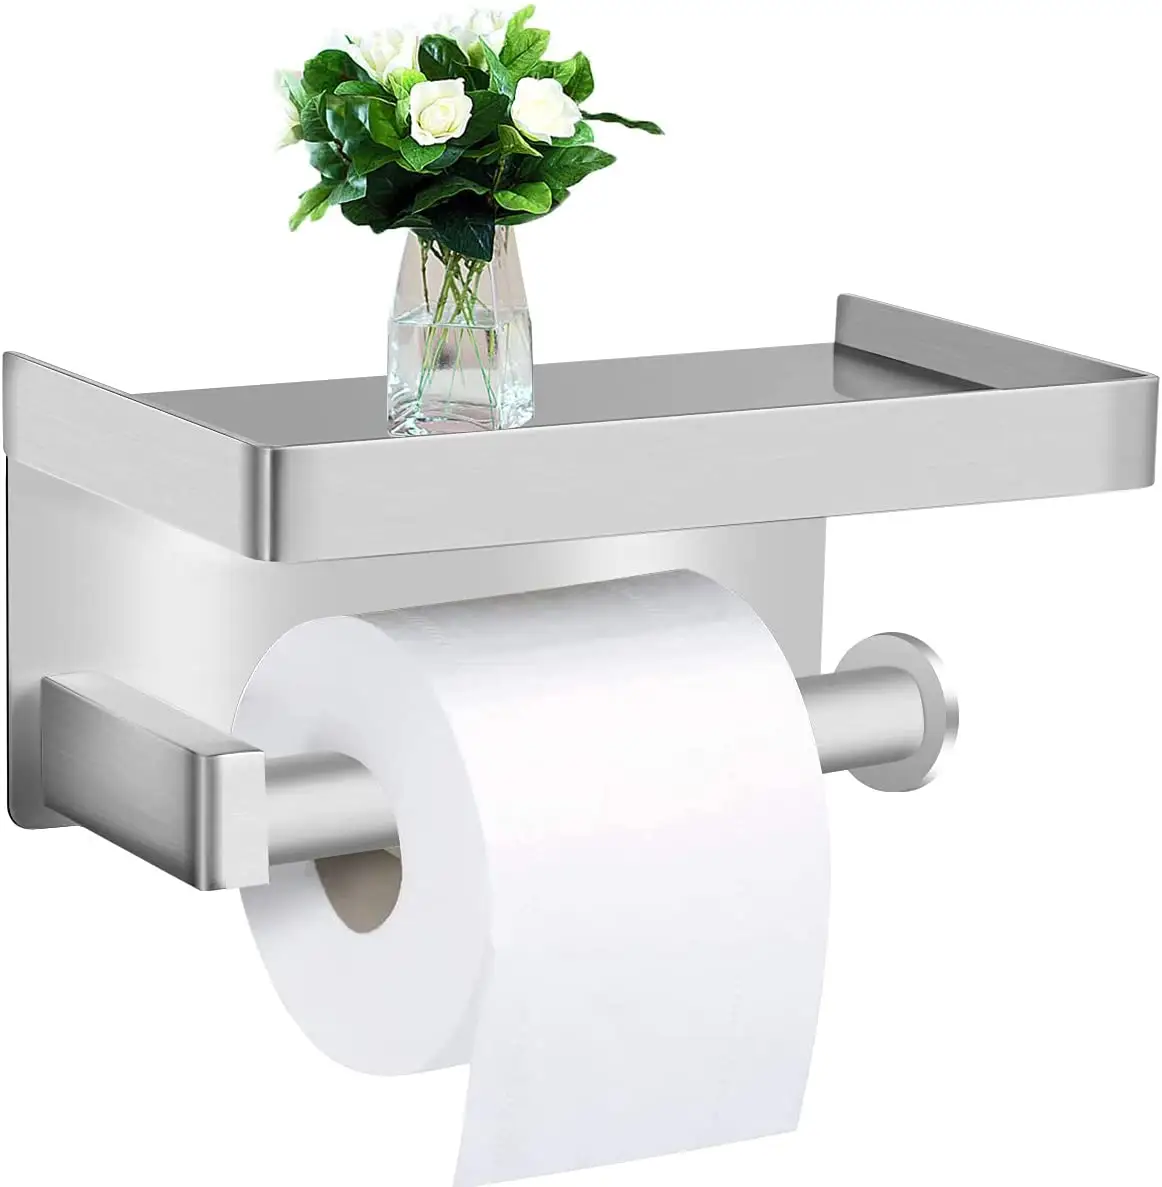 Legen Sie das Mobiltelefon auf den Servietten halter, um ein Herunterfallen und eine nagel freie Installation des schwarzen Toiletten papier halters für Papier tücher zu verhindern